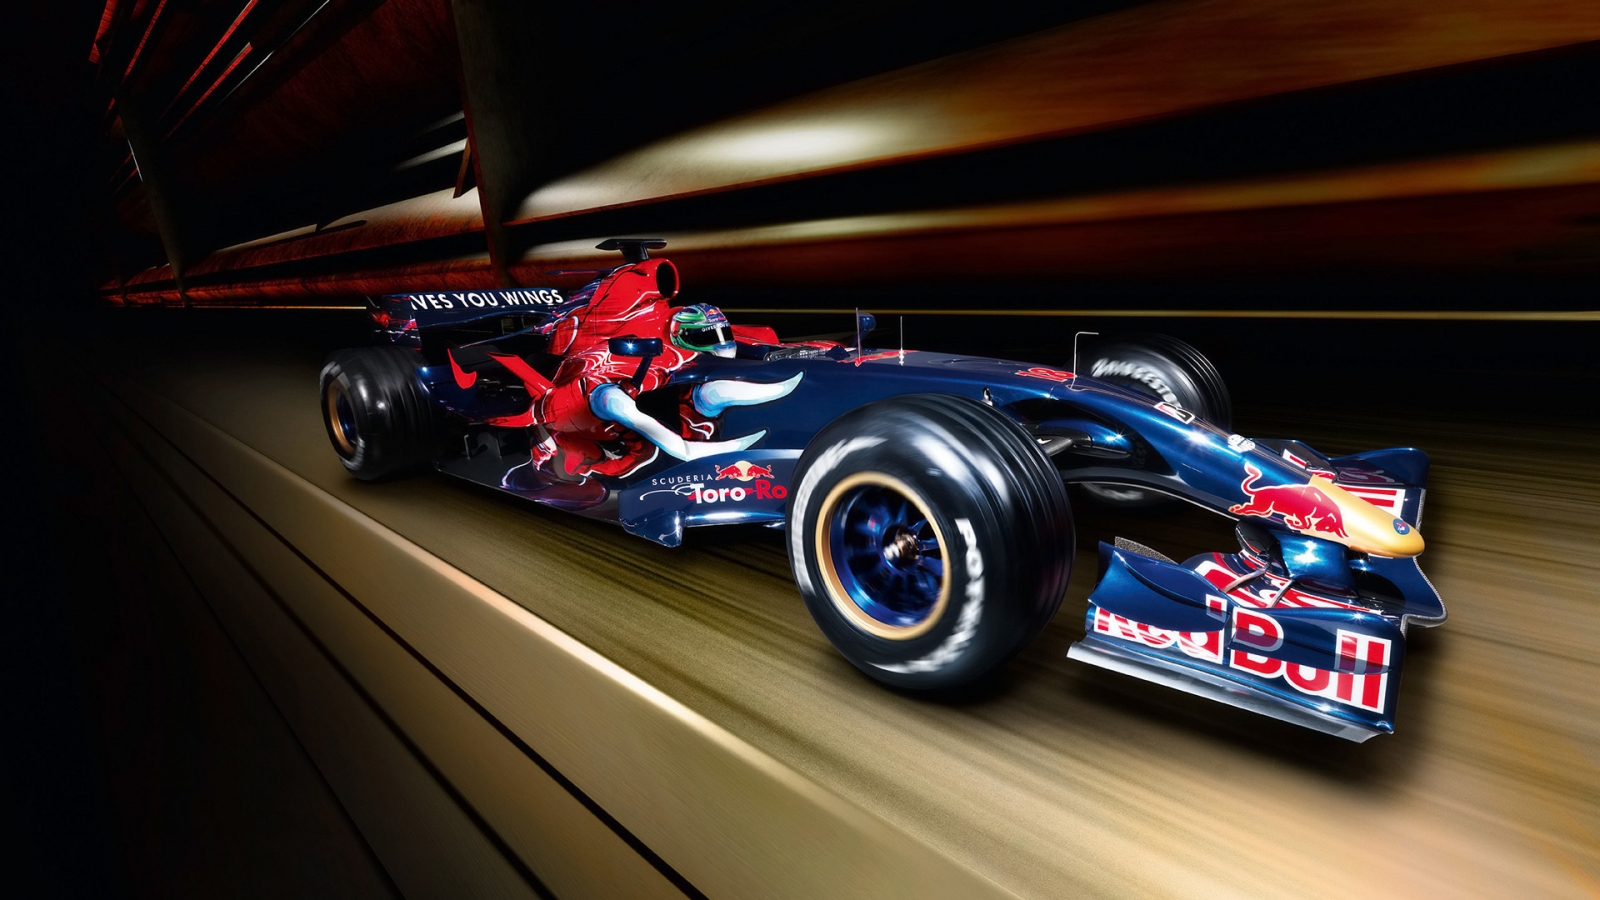 Formula 1 Red Bull 2007 for 1600 x 900 HDTV resolution